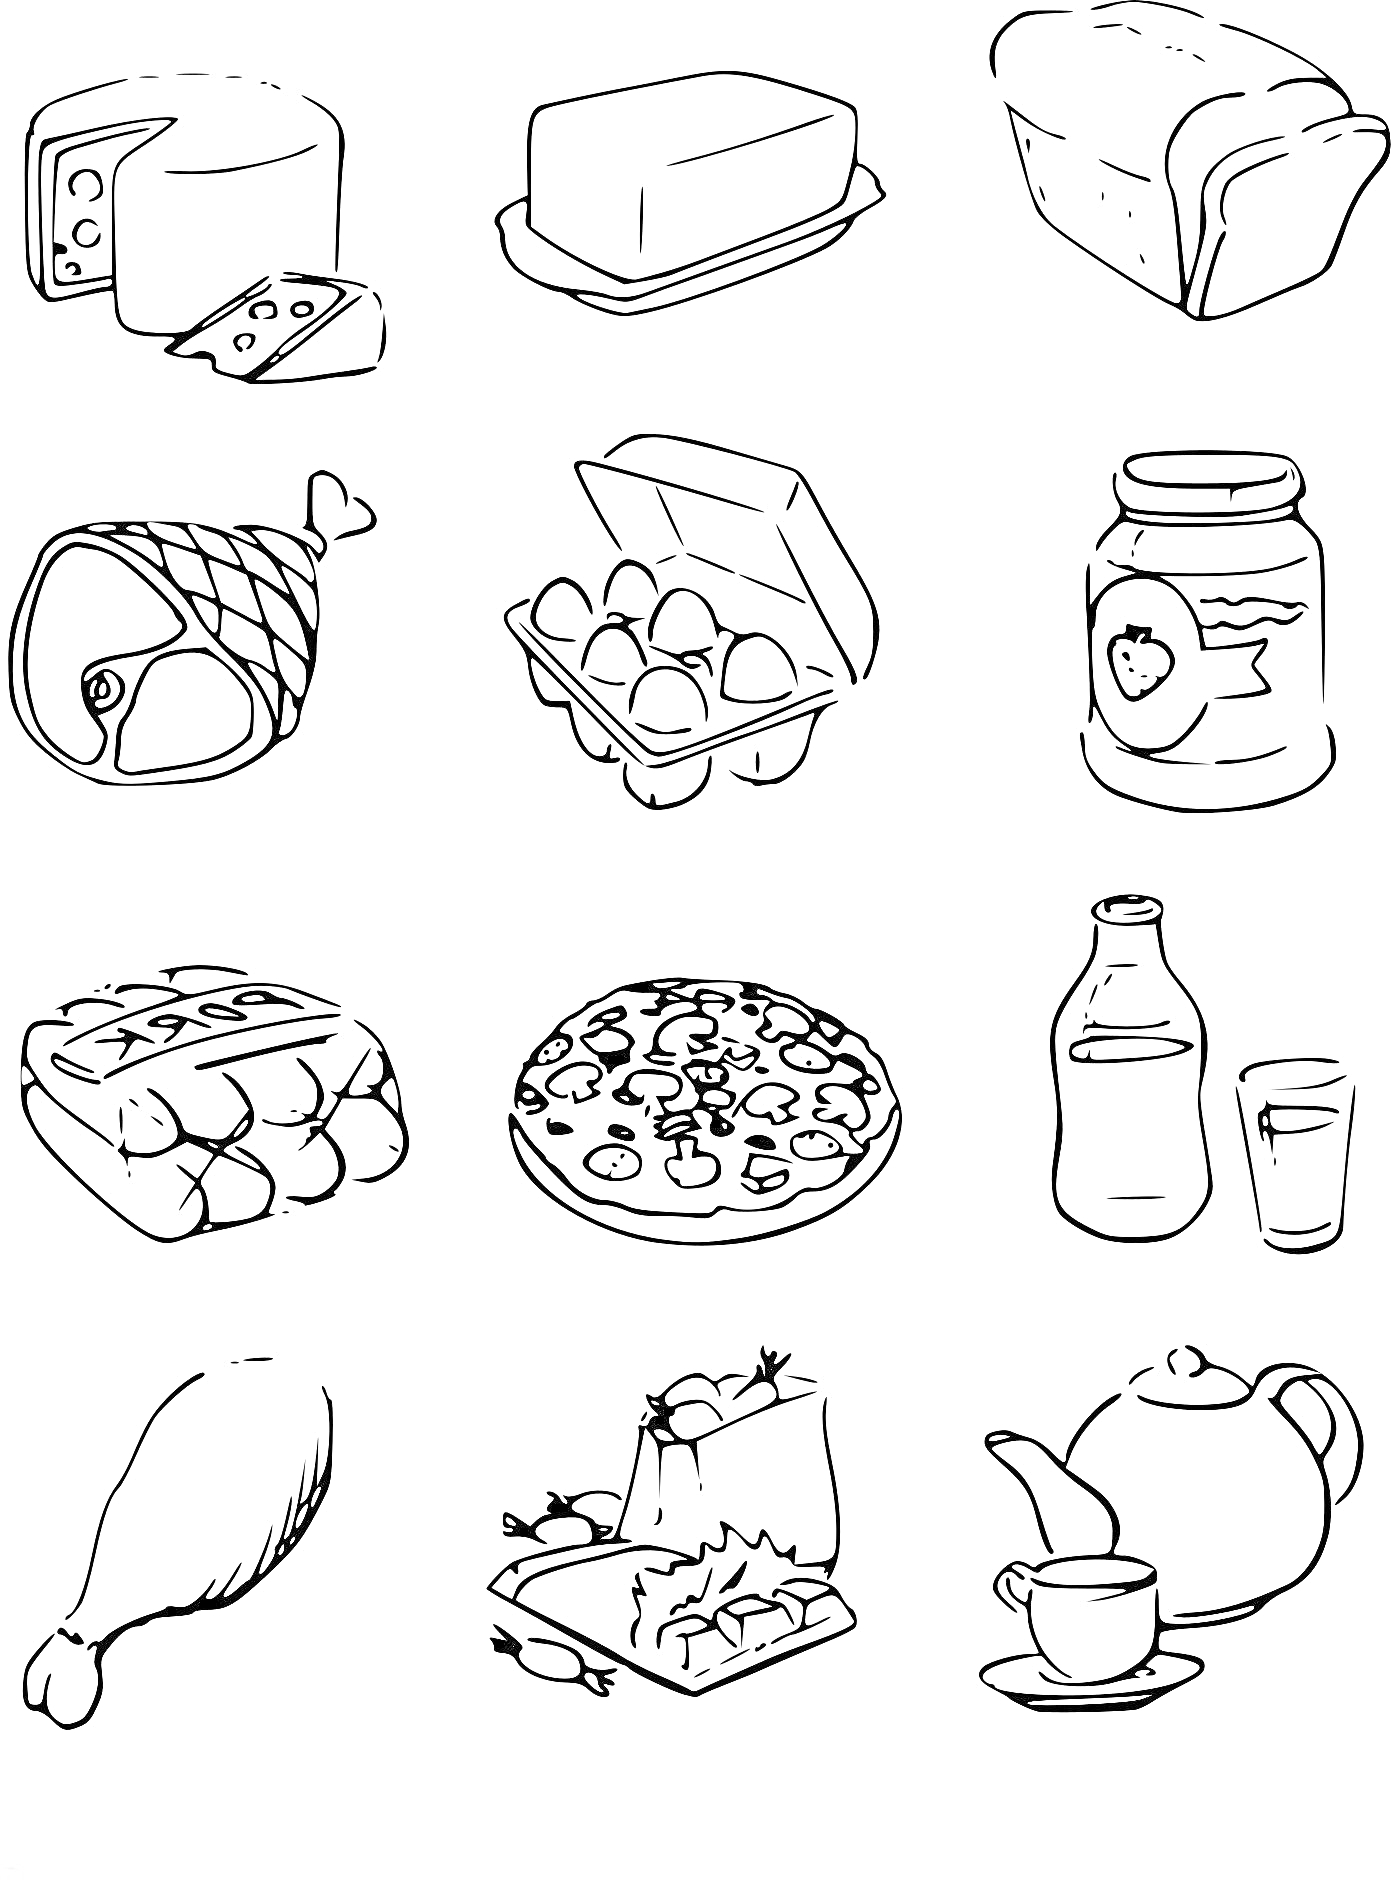 сыр, масло, хлеб, ветчина, яйца (картонная упаковка), джем (банка), шоколад, пицца, молоко (бутылка) и стакан, куриная нога, торт, чайник и чашка